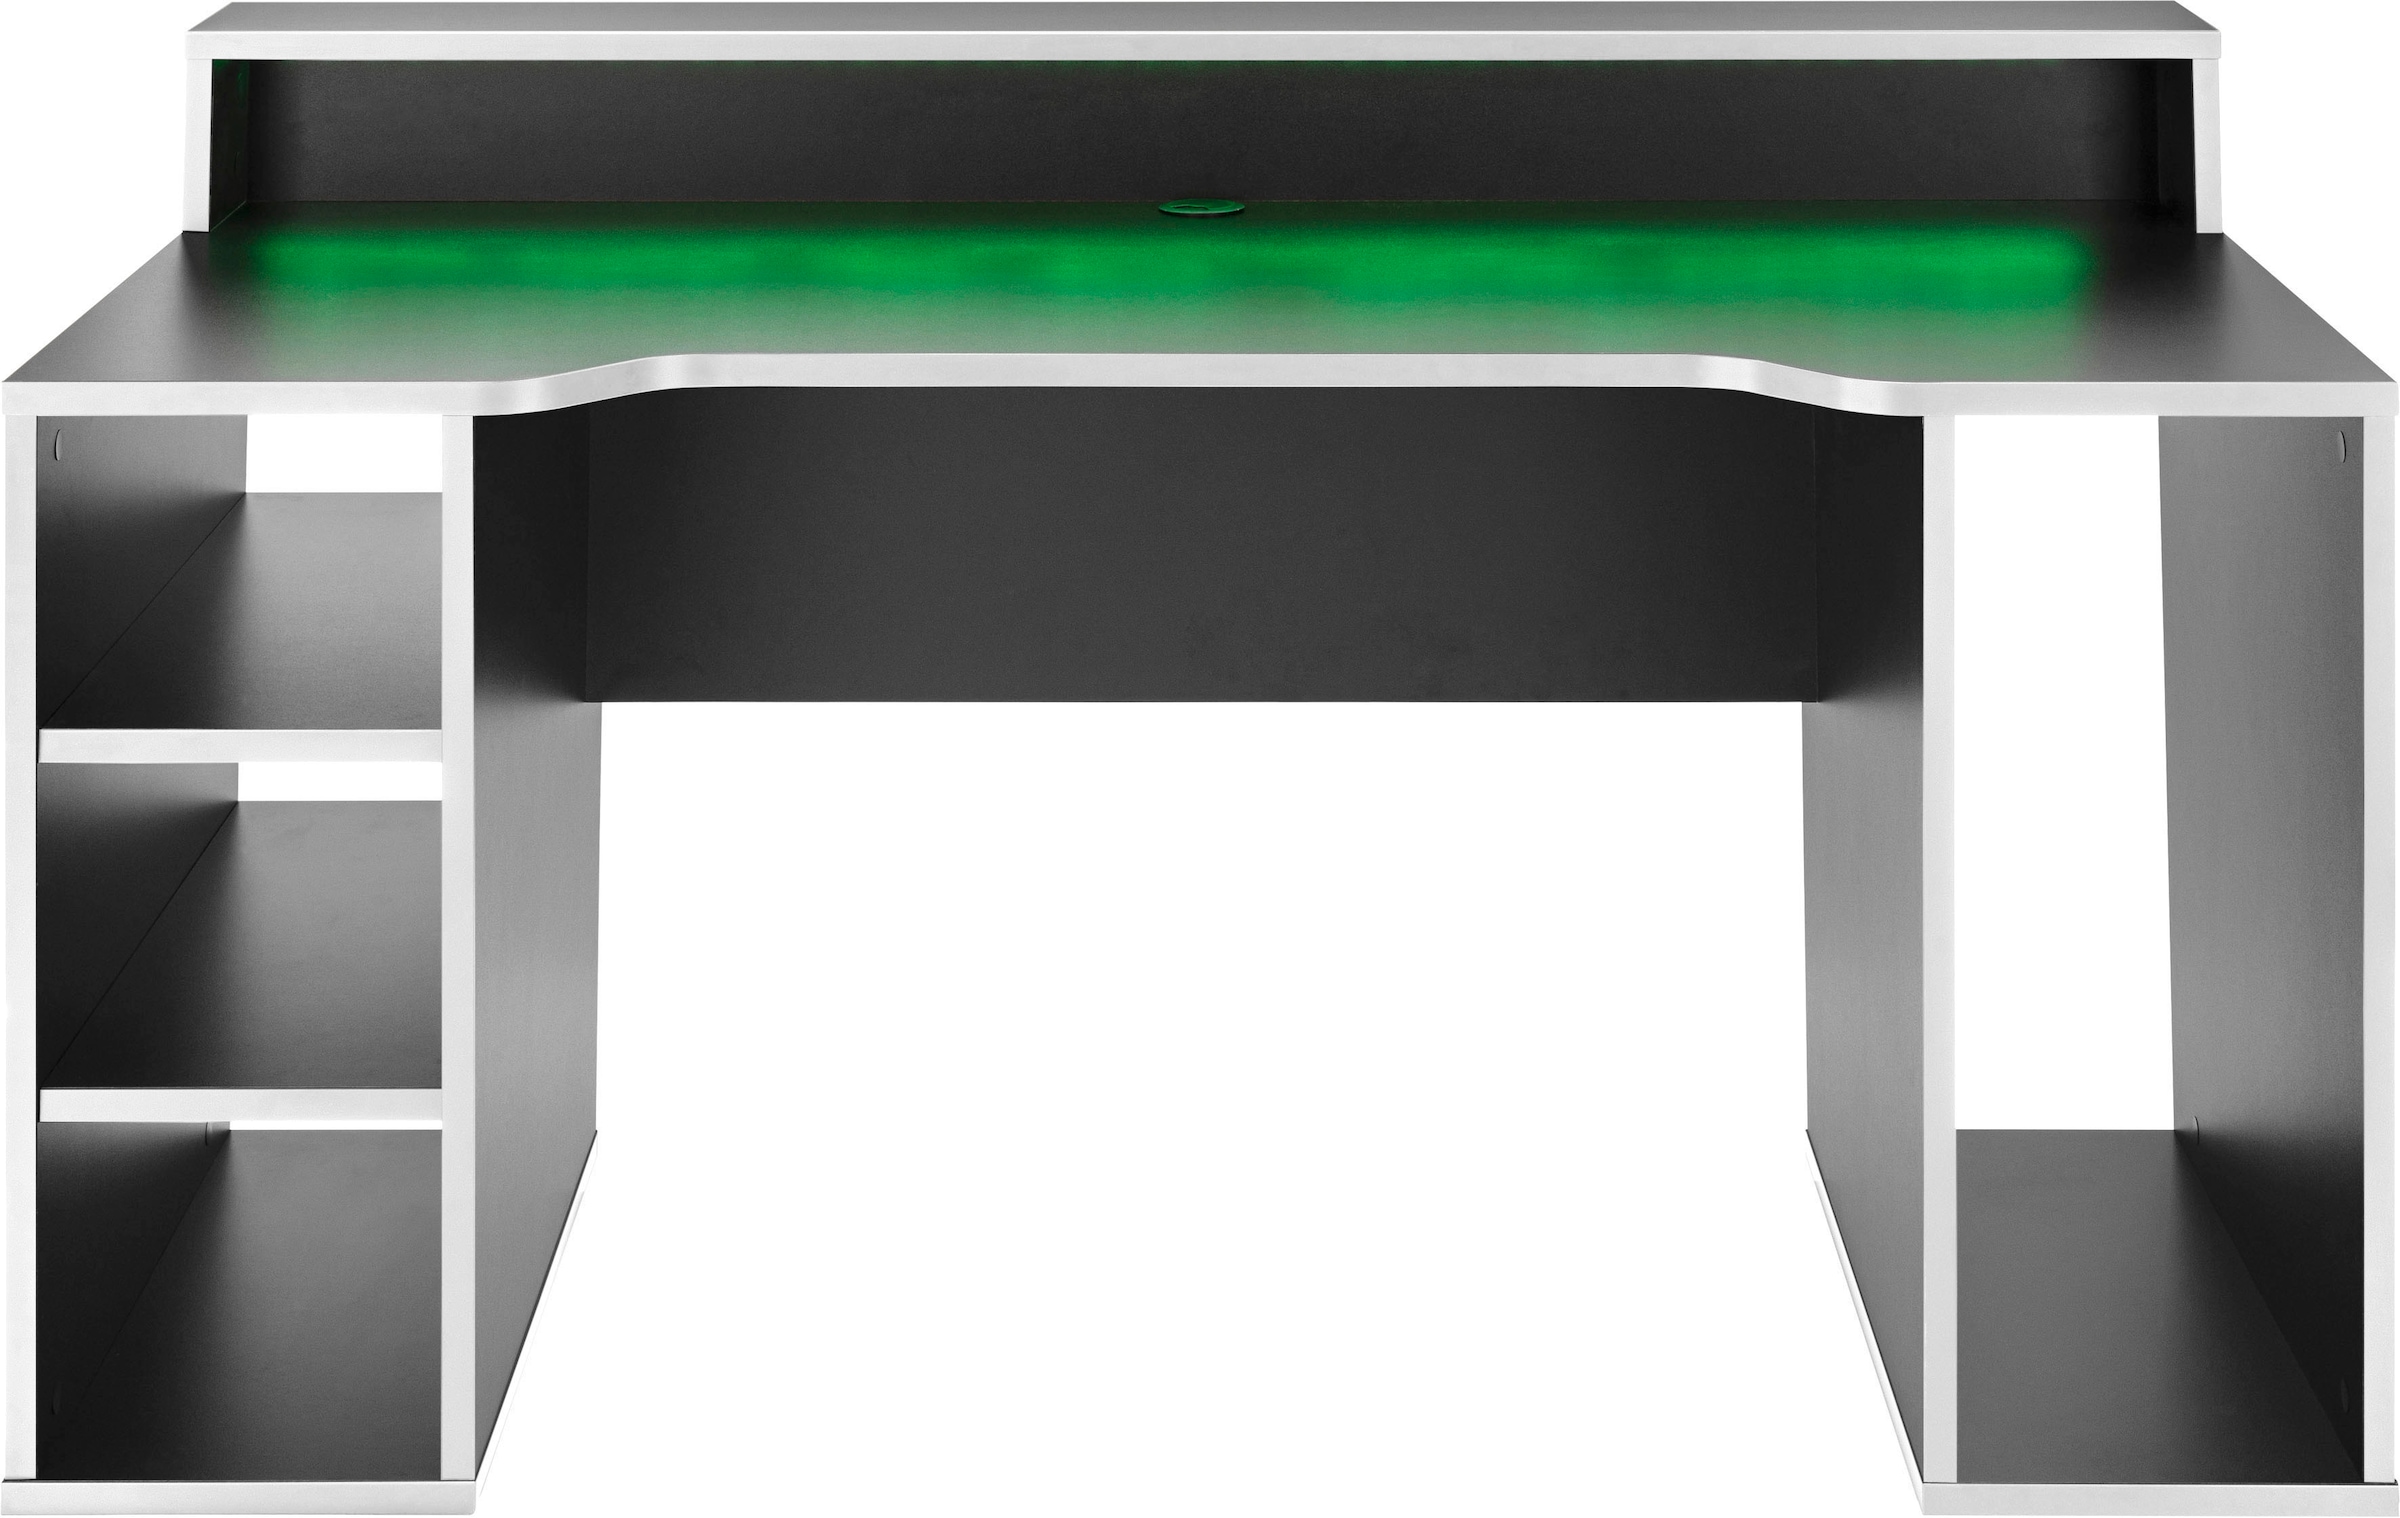 FORTE Gamingtisch »Tezaur«, mit RGB-Beleuchtung, Breite 160 cm